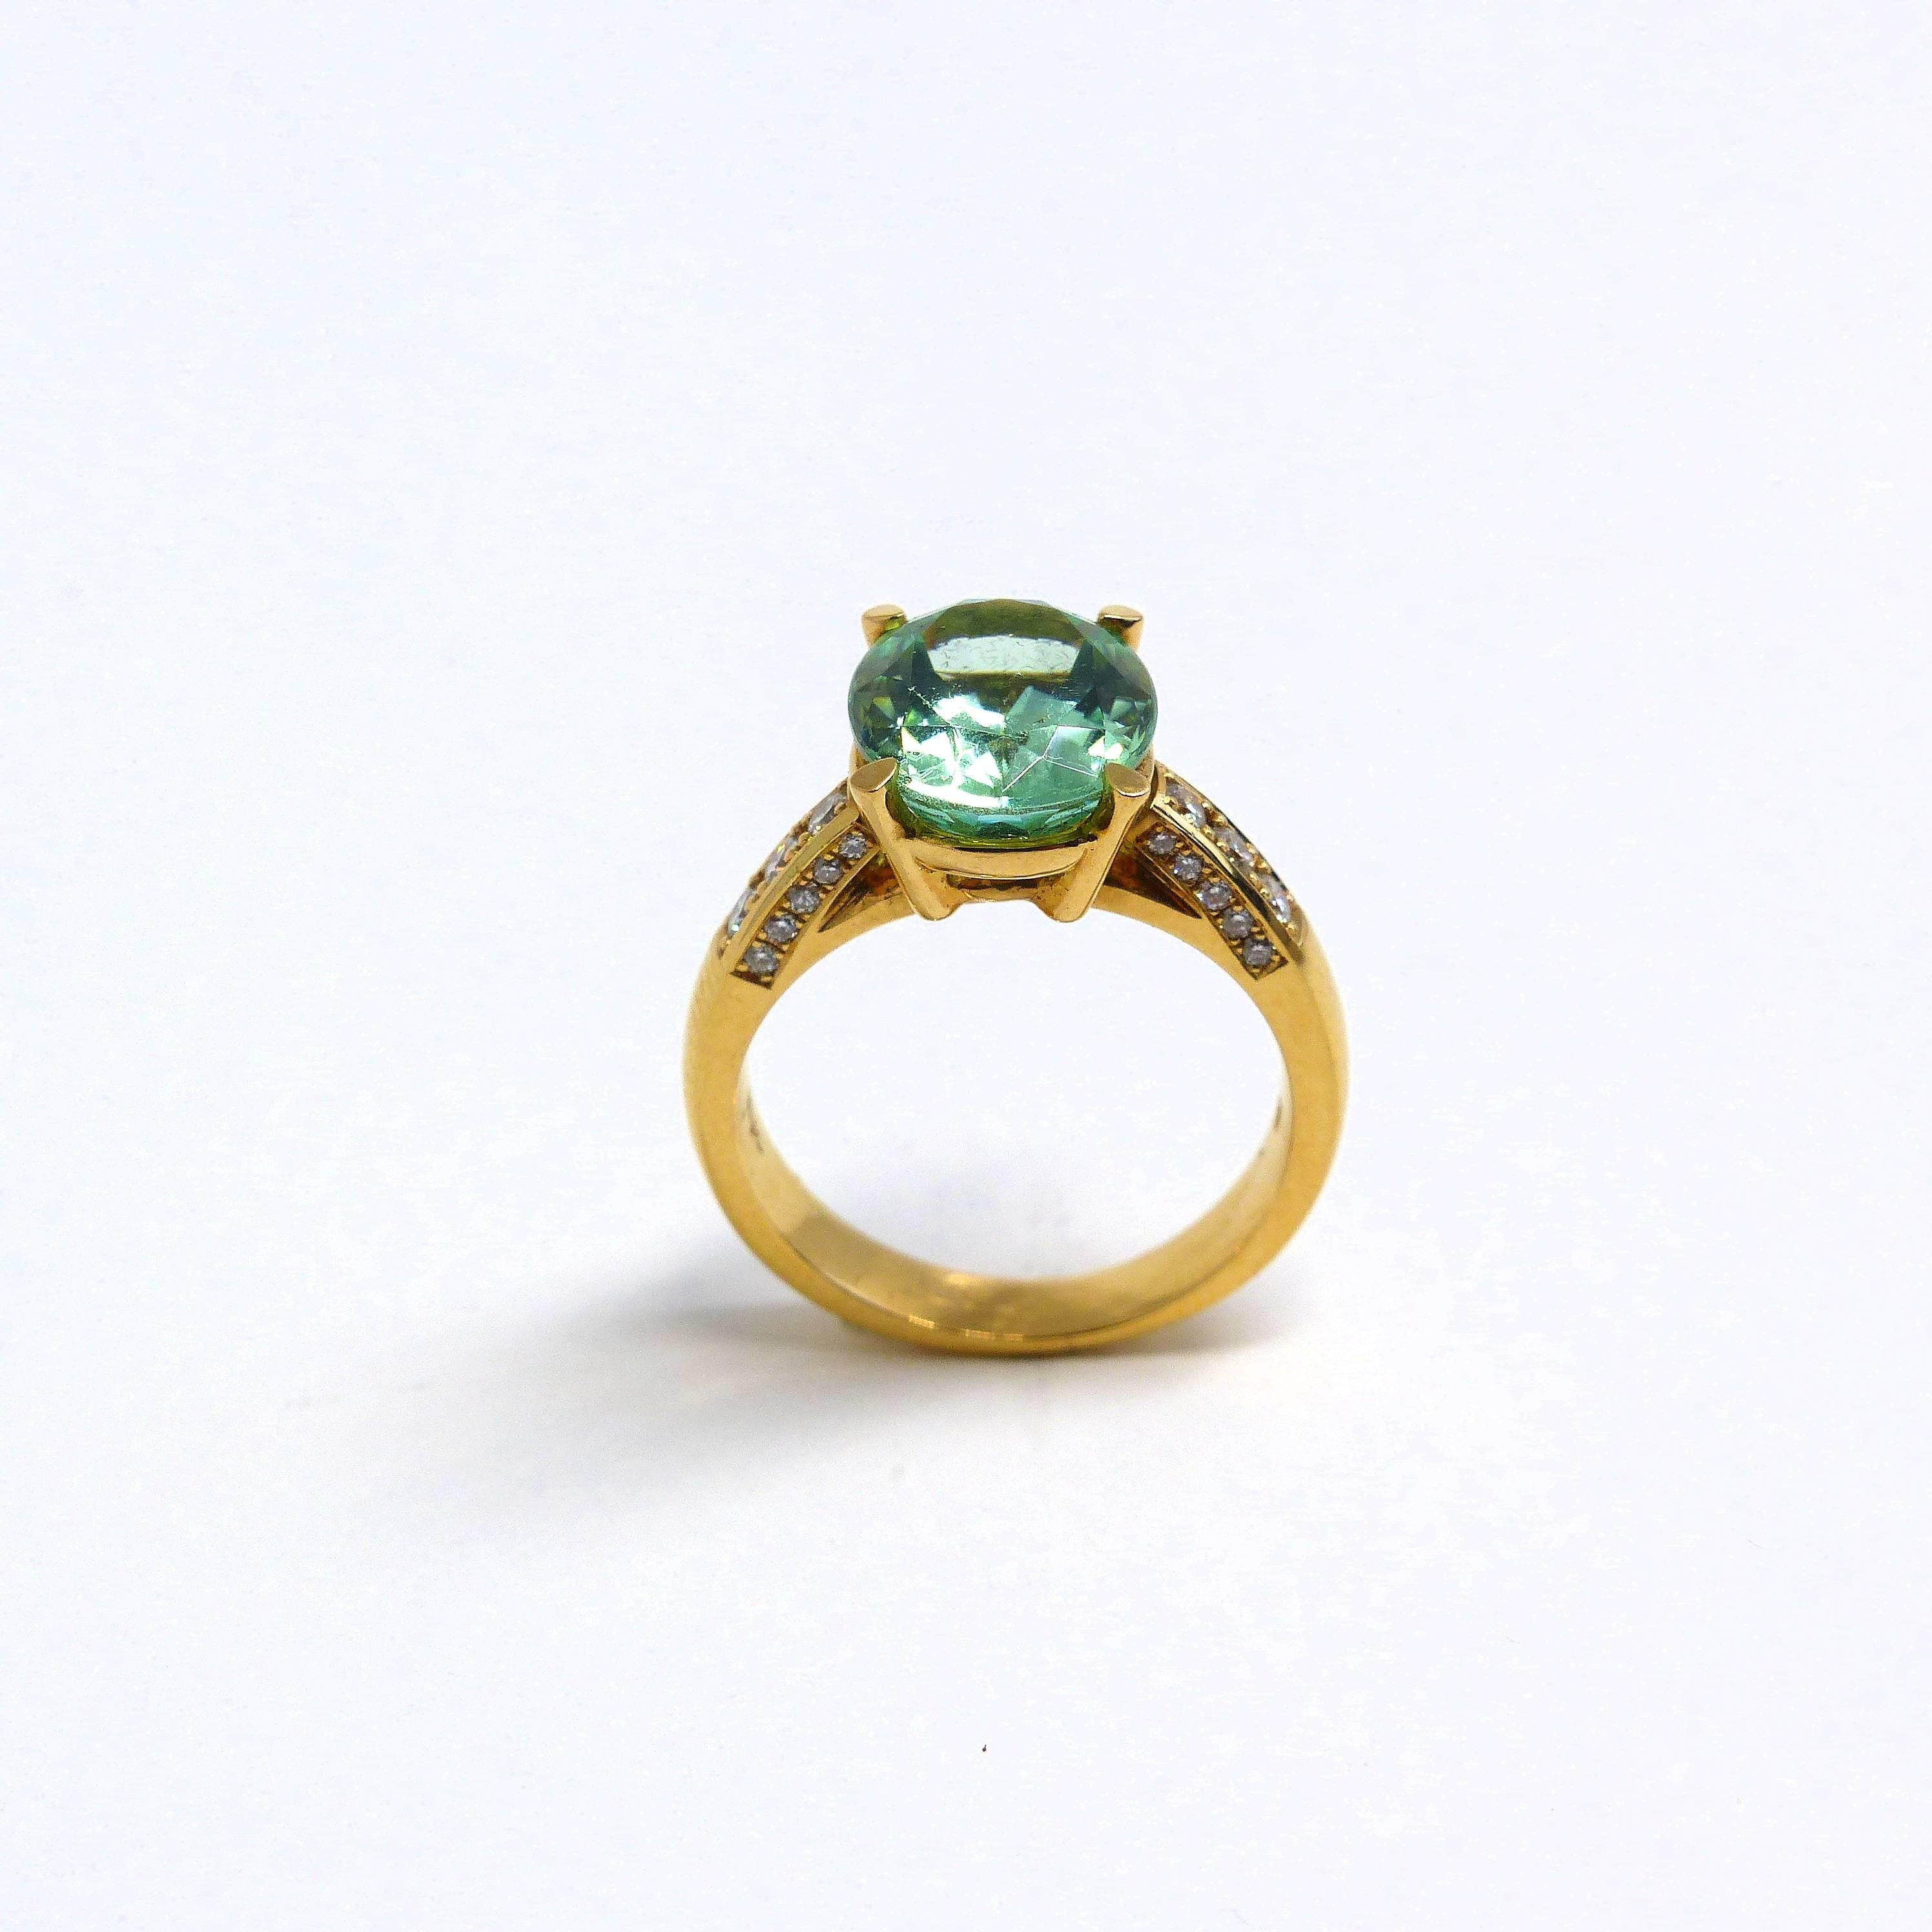 Dieser Ring aus 18 Karat Roségold (7,73 g) ist mit 1x feinem grünem Turmalin (facettiert, oval, 12x10 mm, 4,38ct) + 26x Diamanten (Brillantschliff, 1-2 mm, G/VS, 0,32cts) besetzt. 

Ringgröße 6 3/4 (54).
